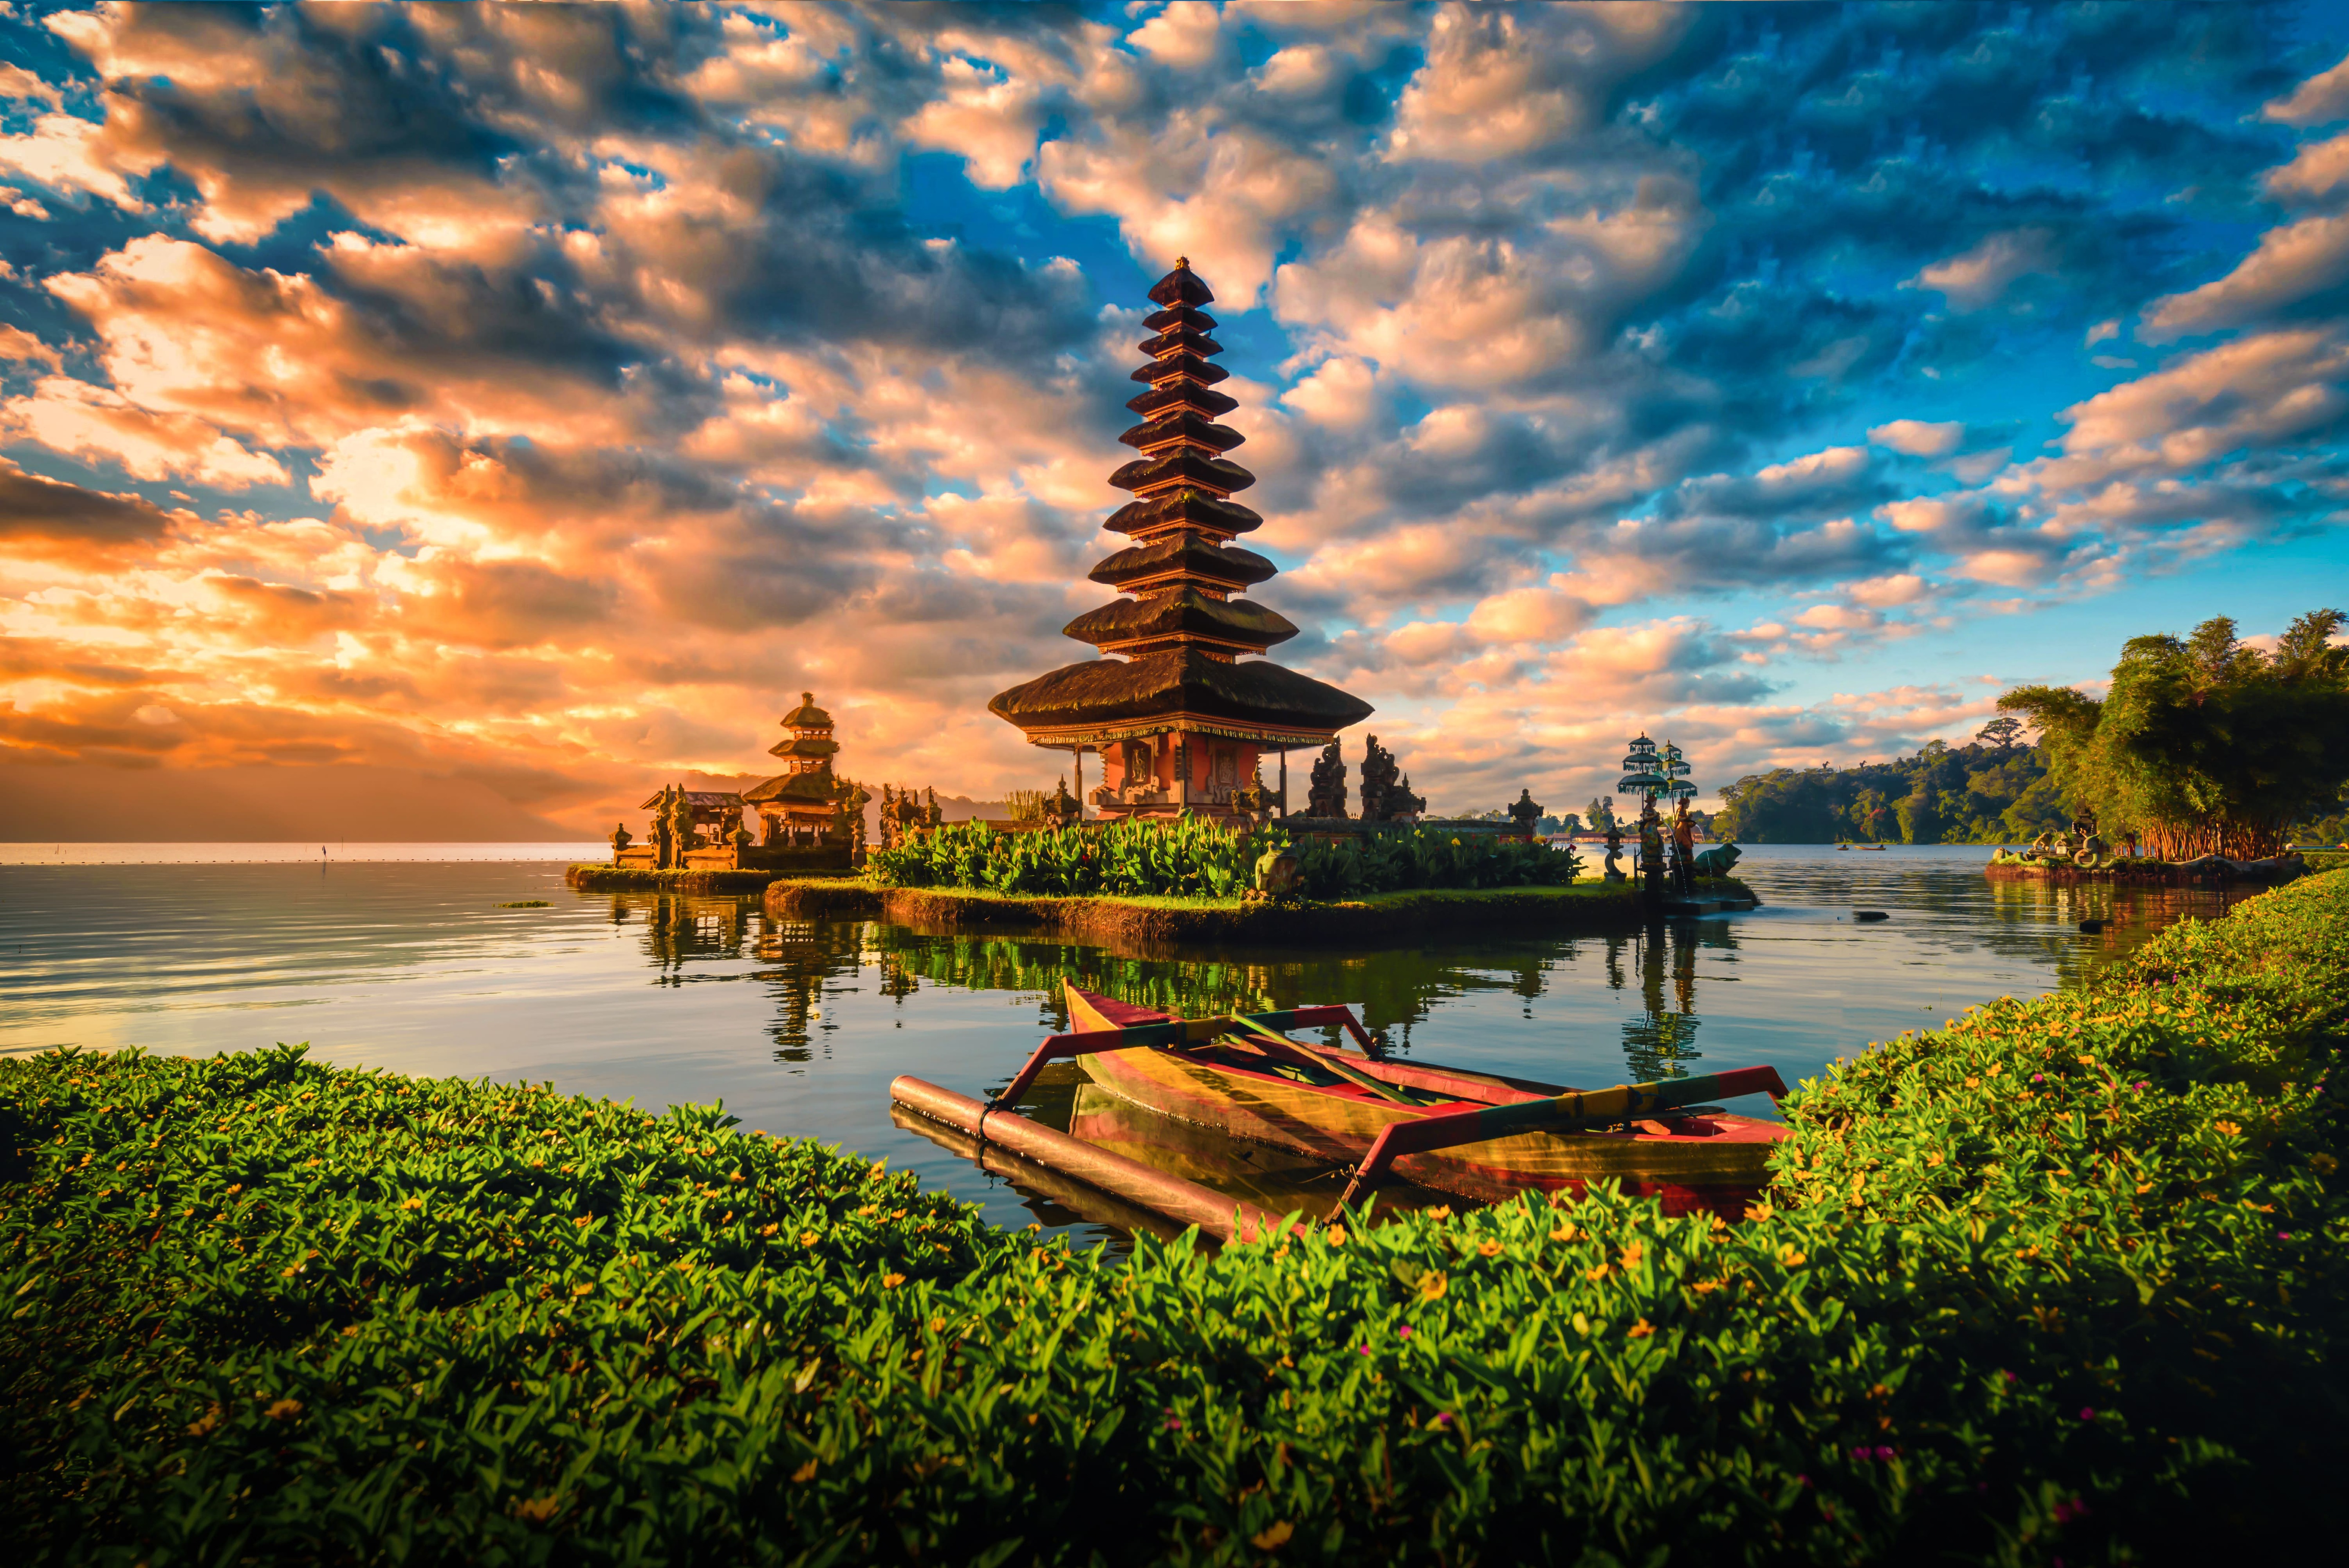 Nos conseils pour préparer vos vacances à Bali